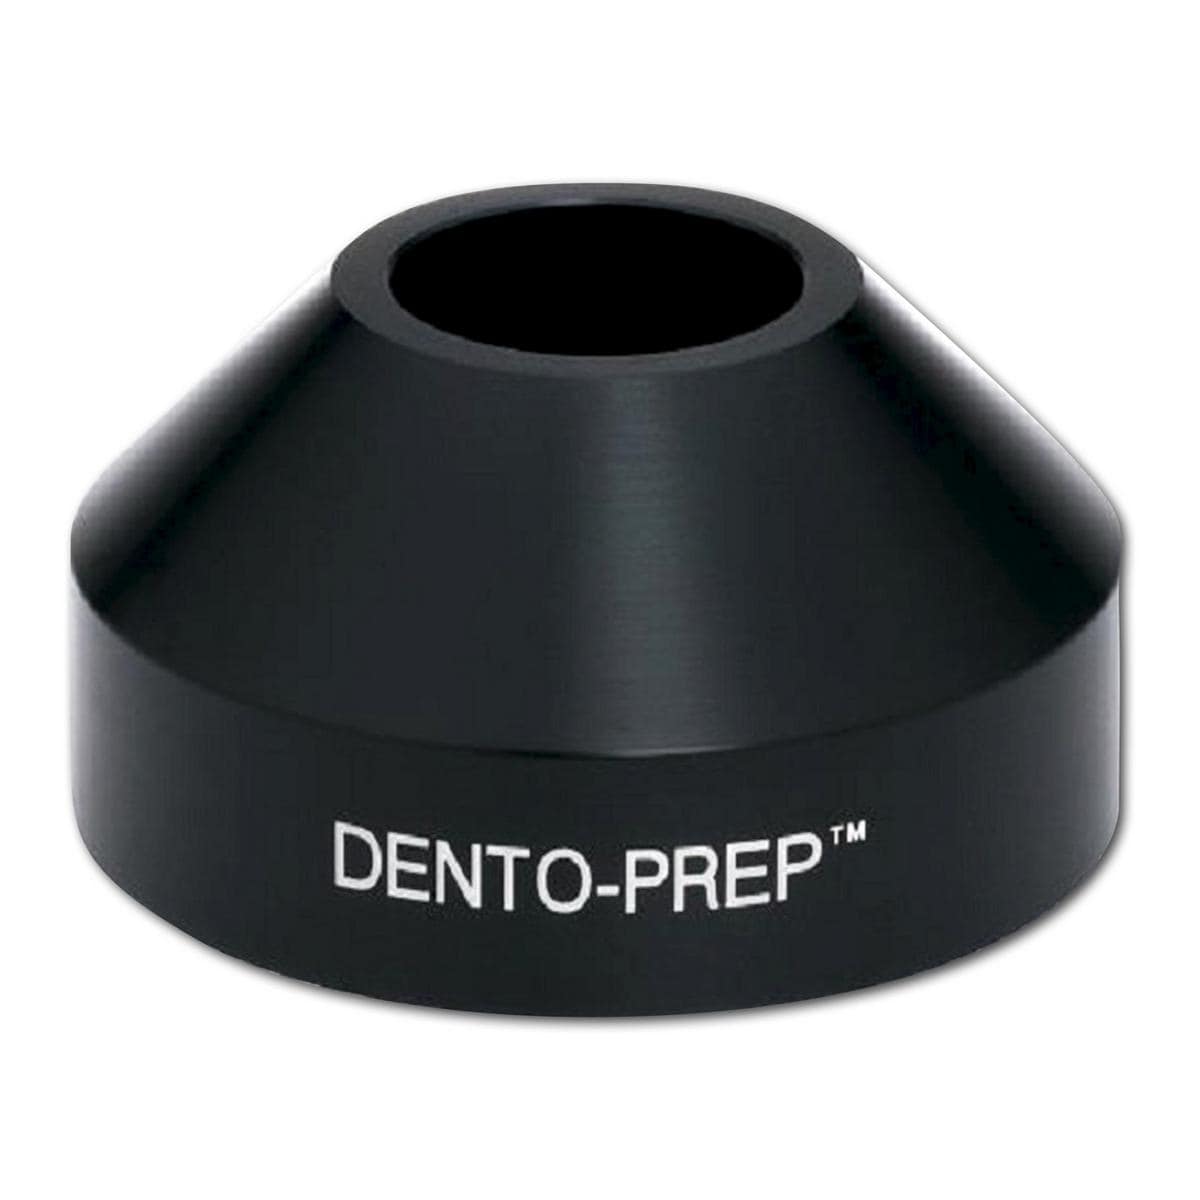 Dento-prep - Standard